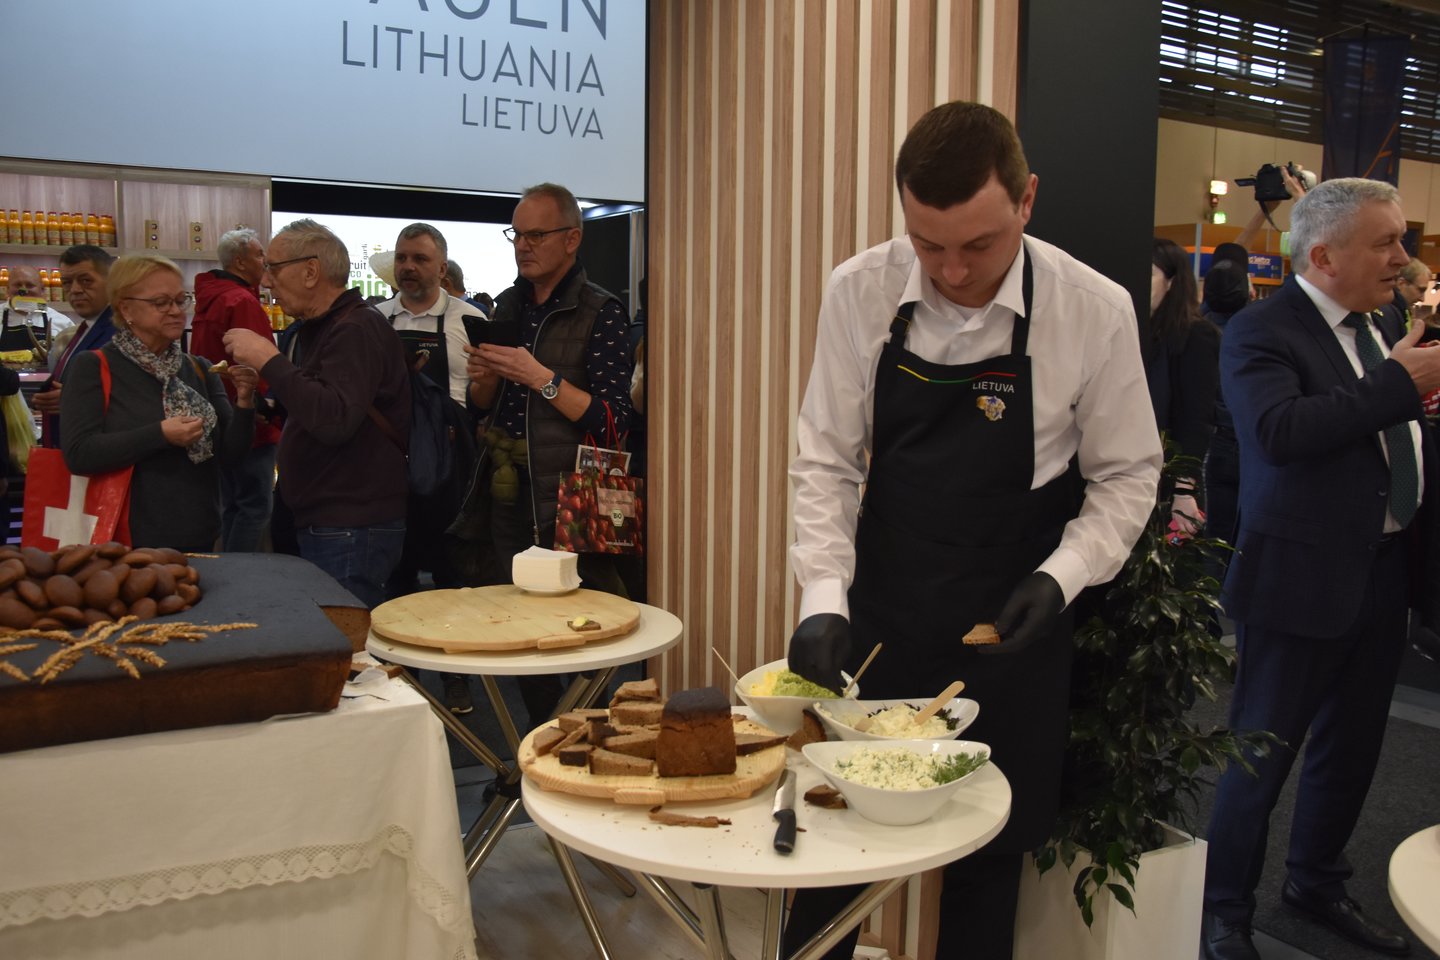 Radviliškių kaimo kepykla parodai iškepė 88 kg svorio duonos kepalą. Ragaujančių ir besigardžiuojančių nepritrūko .<br> A.Srėbalienės nuotr.